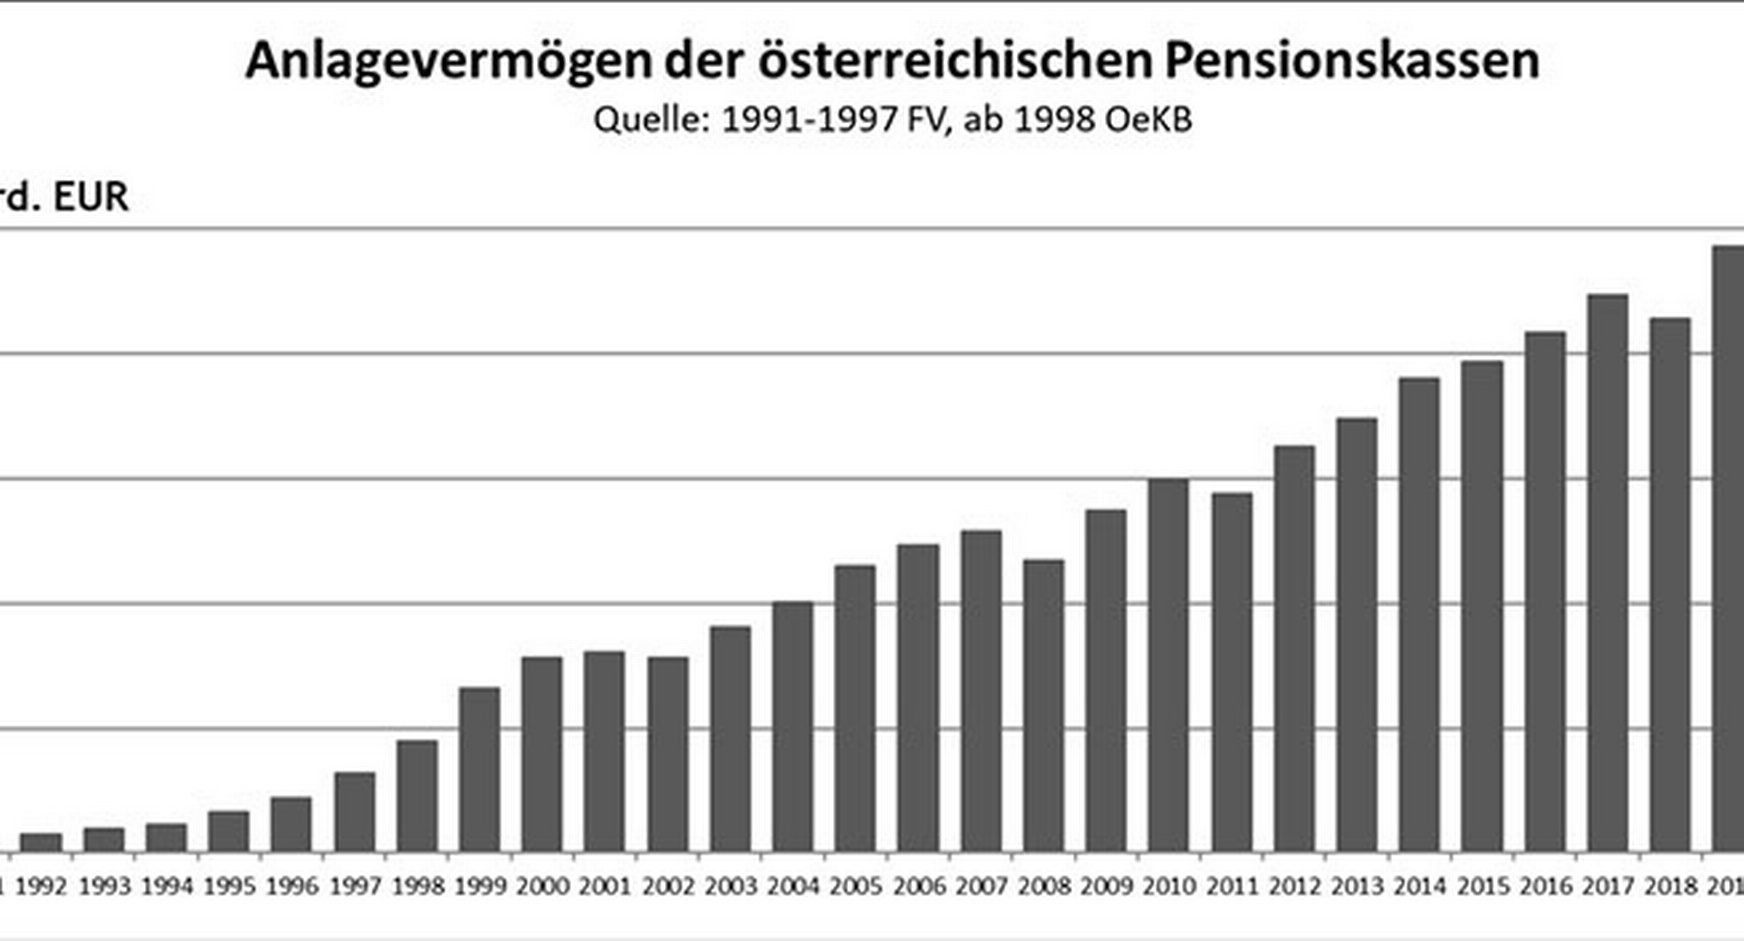 Balkendiagramm zum Anlagevermögen der österreichischen Pensionskassen von 1991 bis 2020